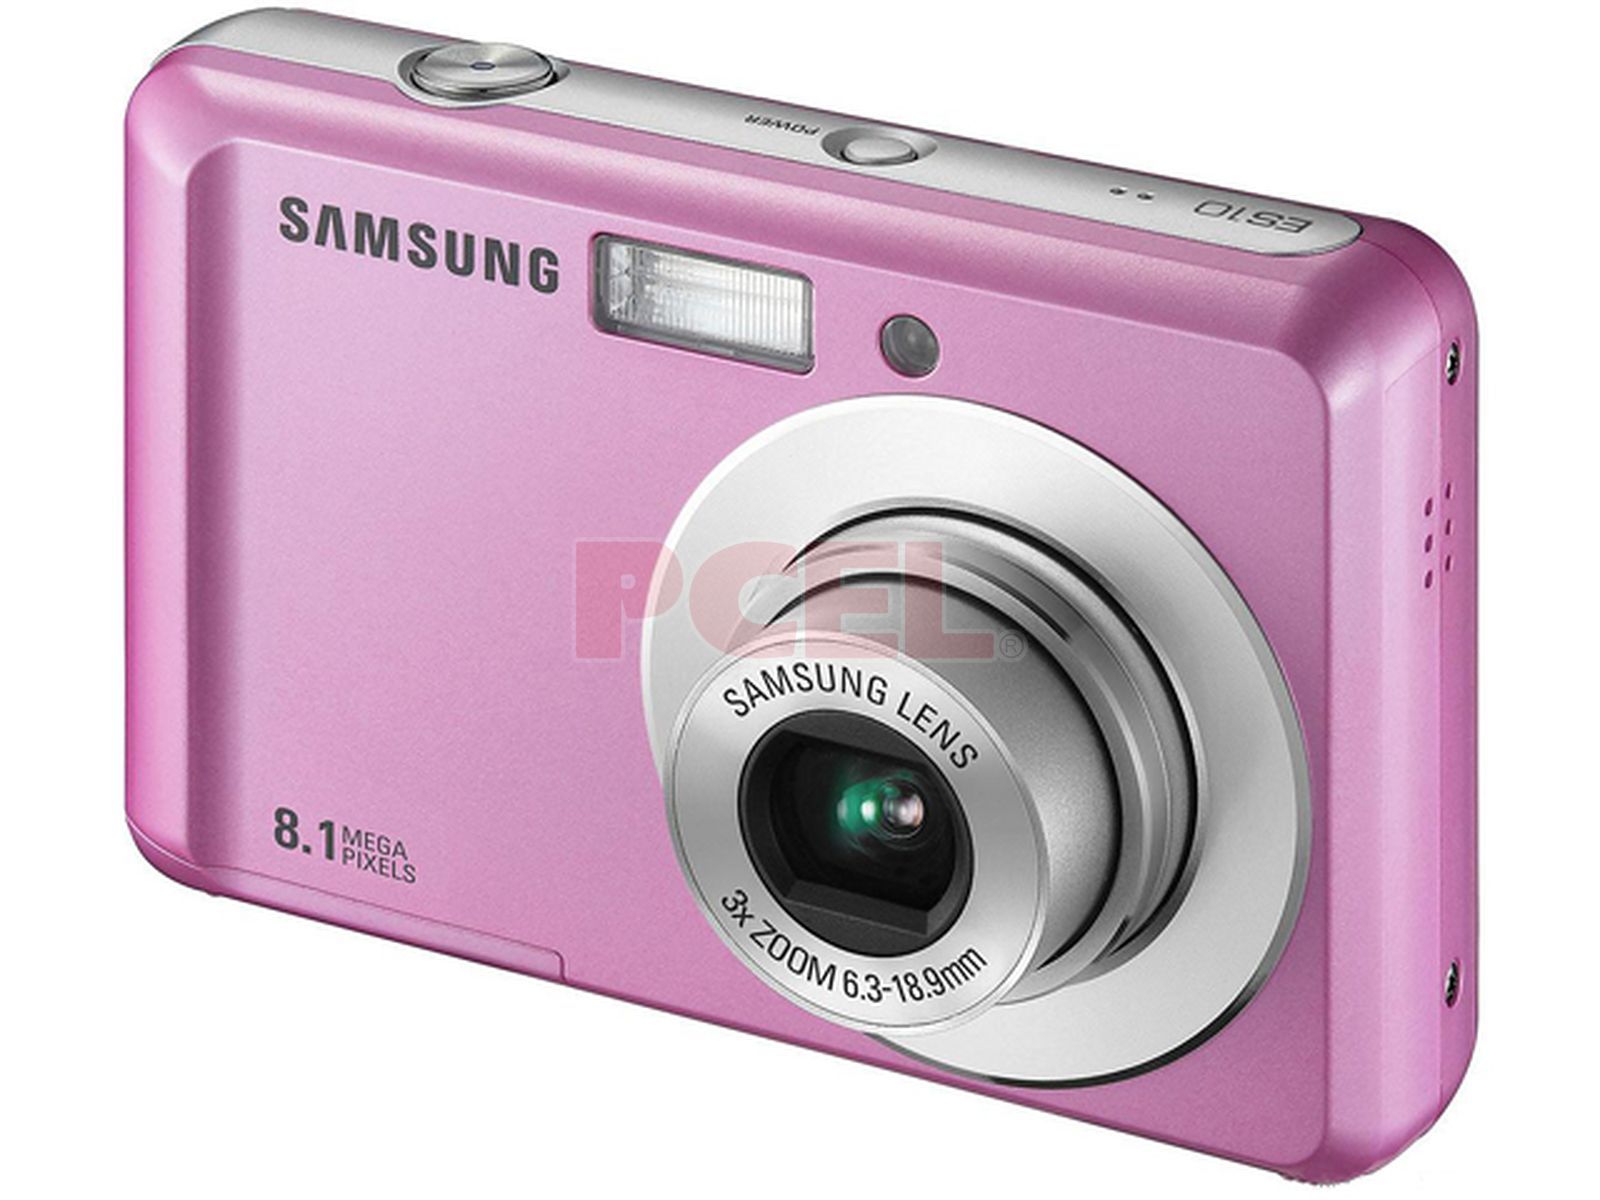 Avispón ropa inversión Cámara Fotográfica Digital Samsung ES10, 8.1MP. Color Rosa